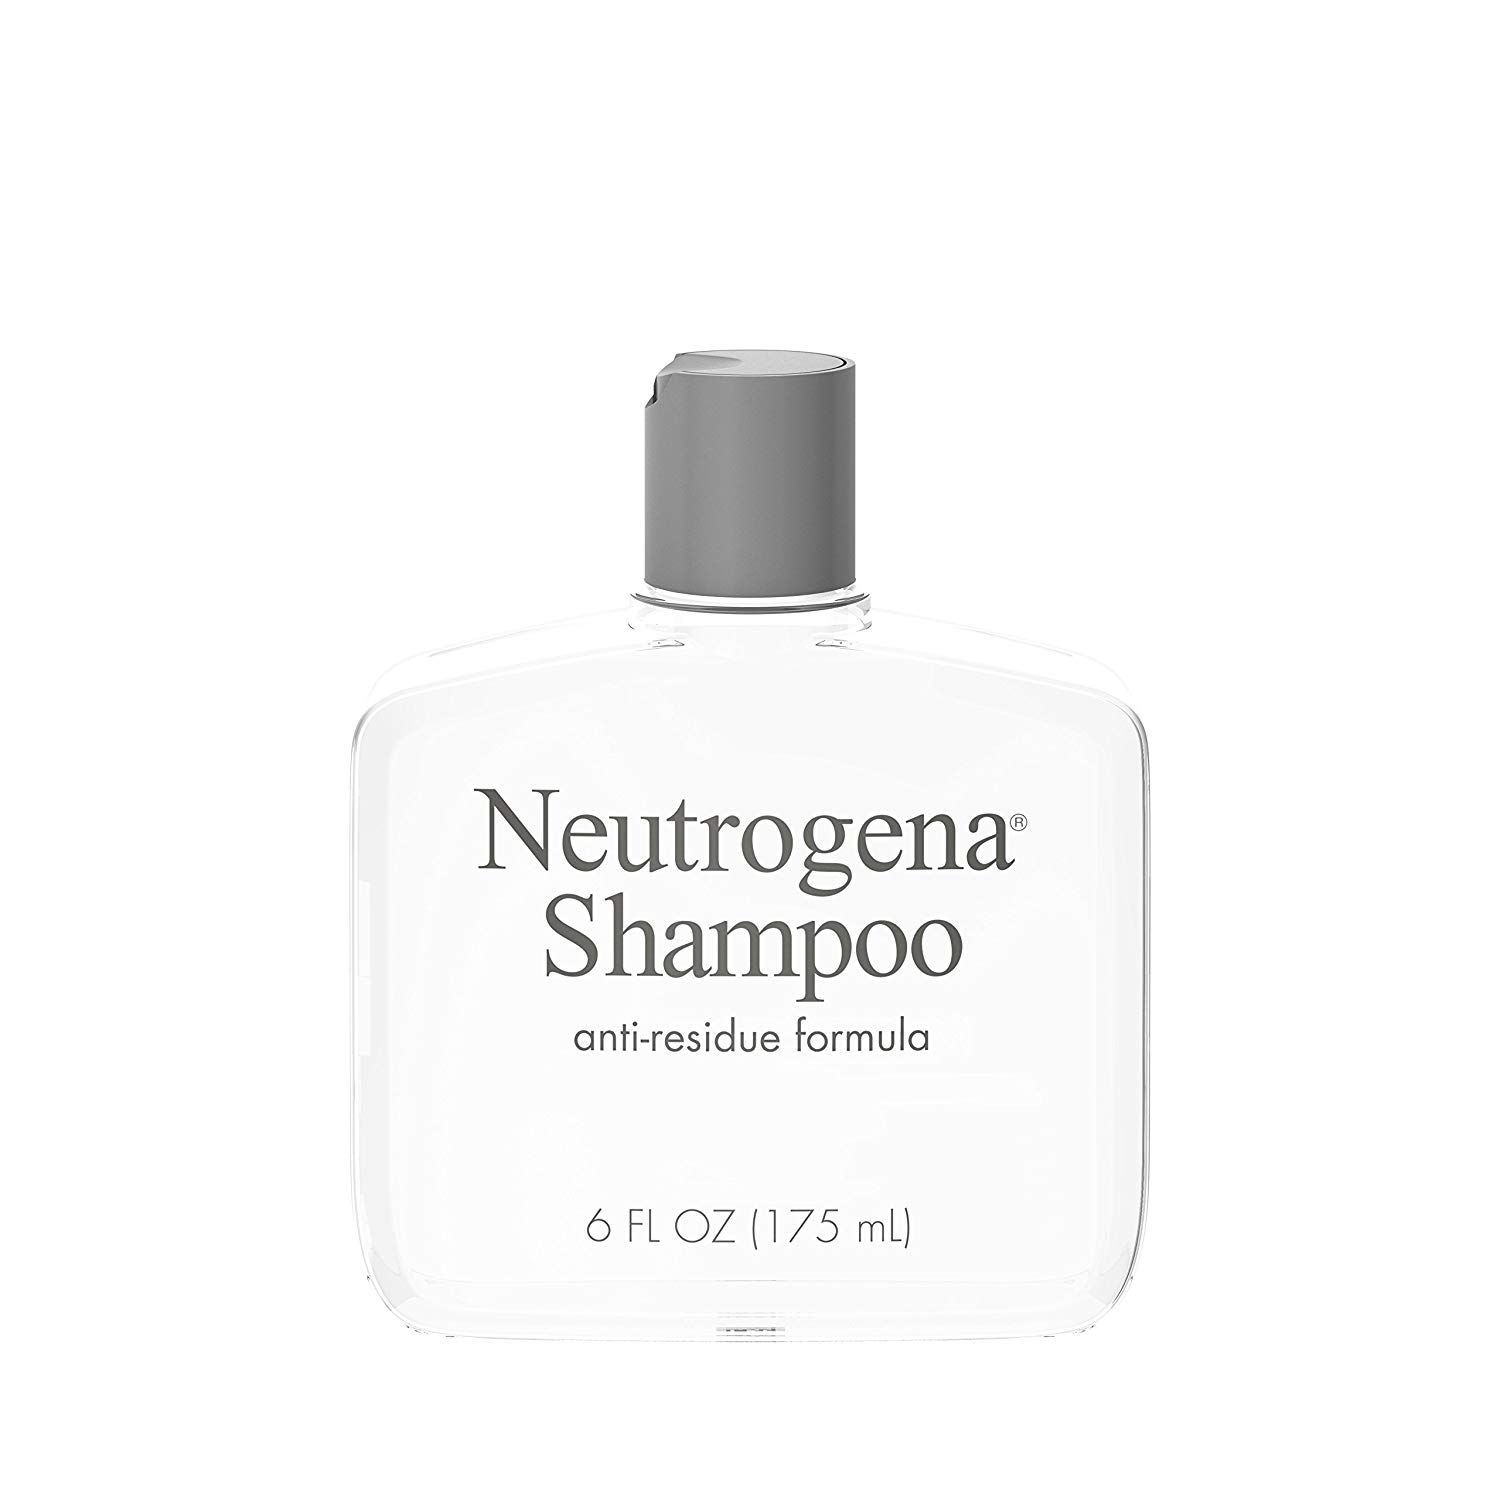 Neutrogena Shampoo, Anti-Residue Formula